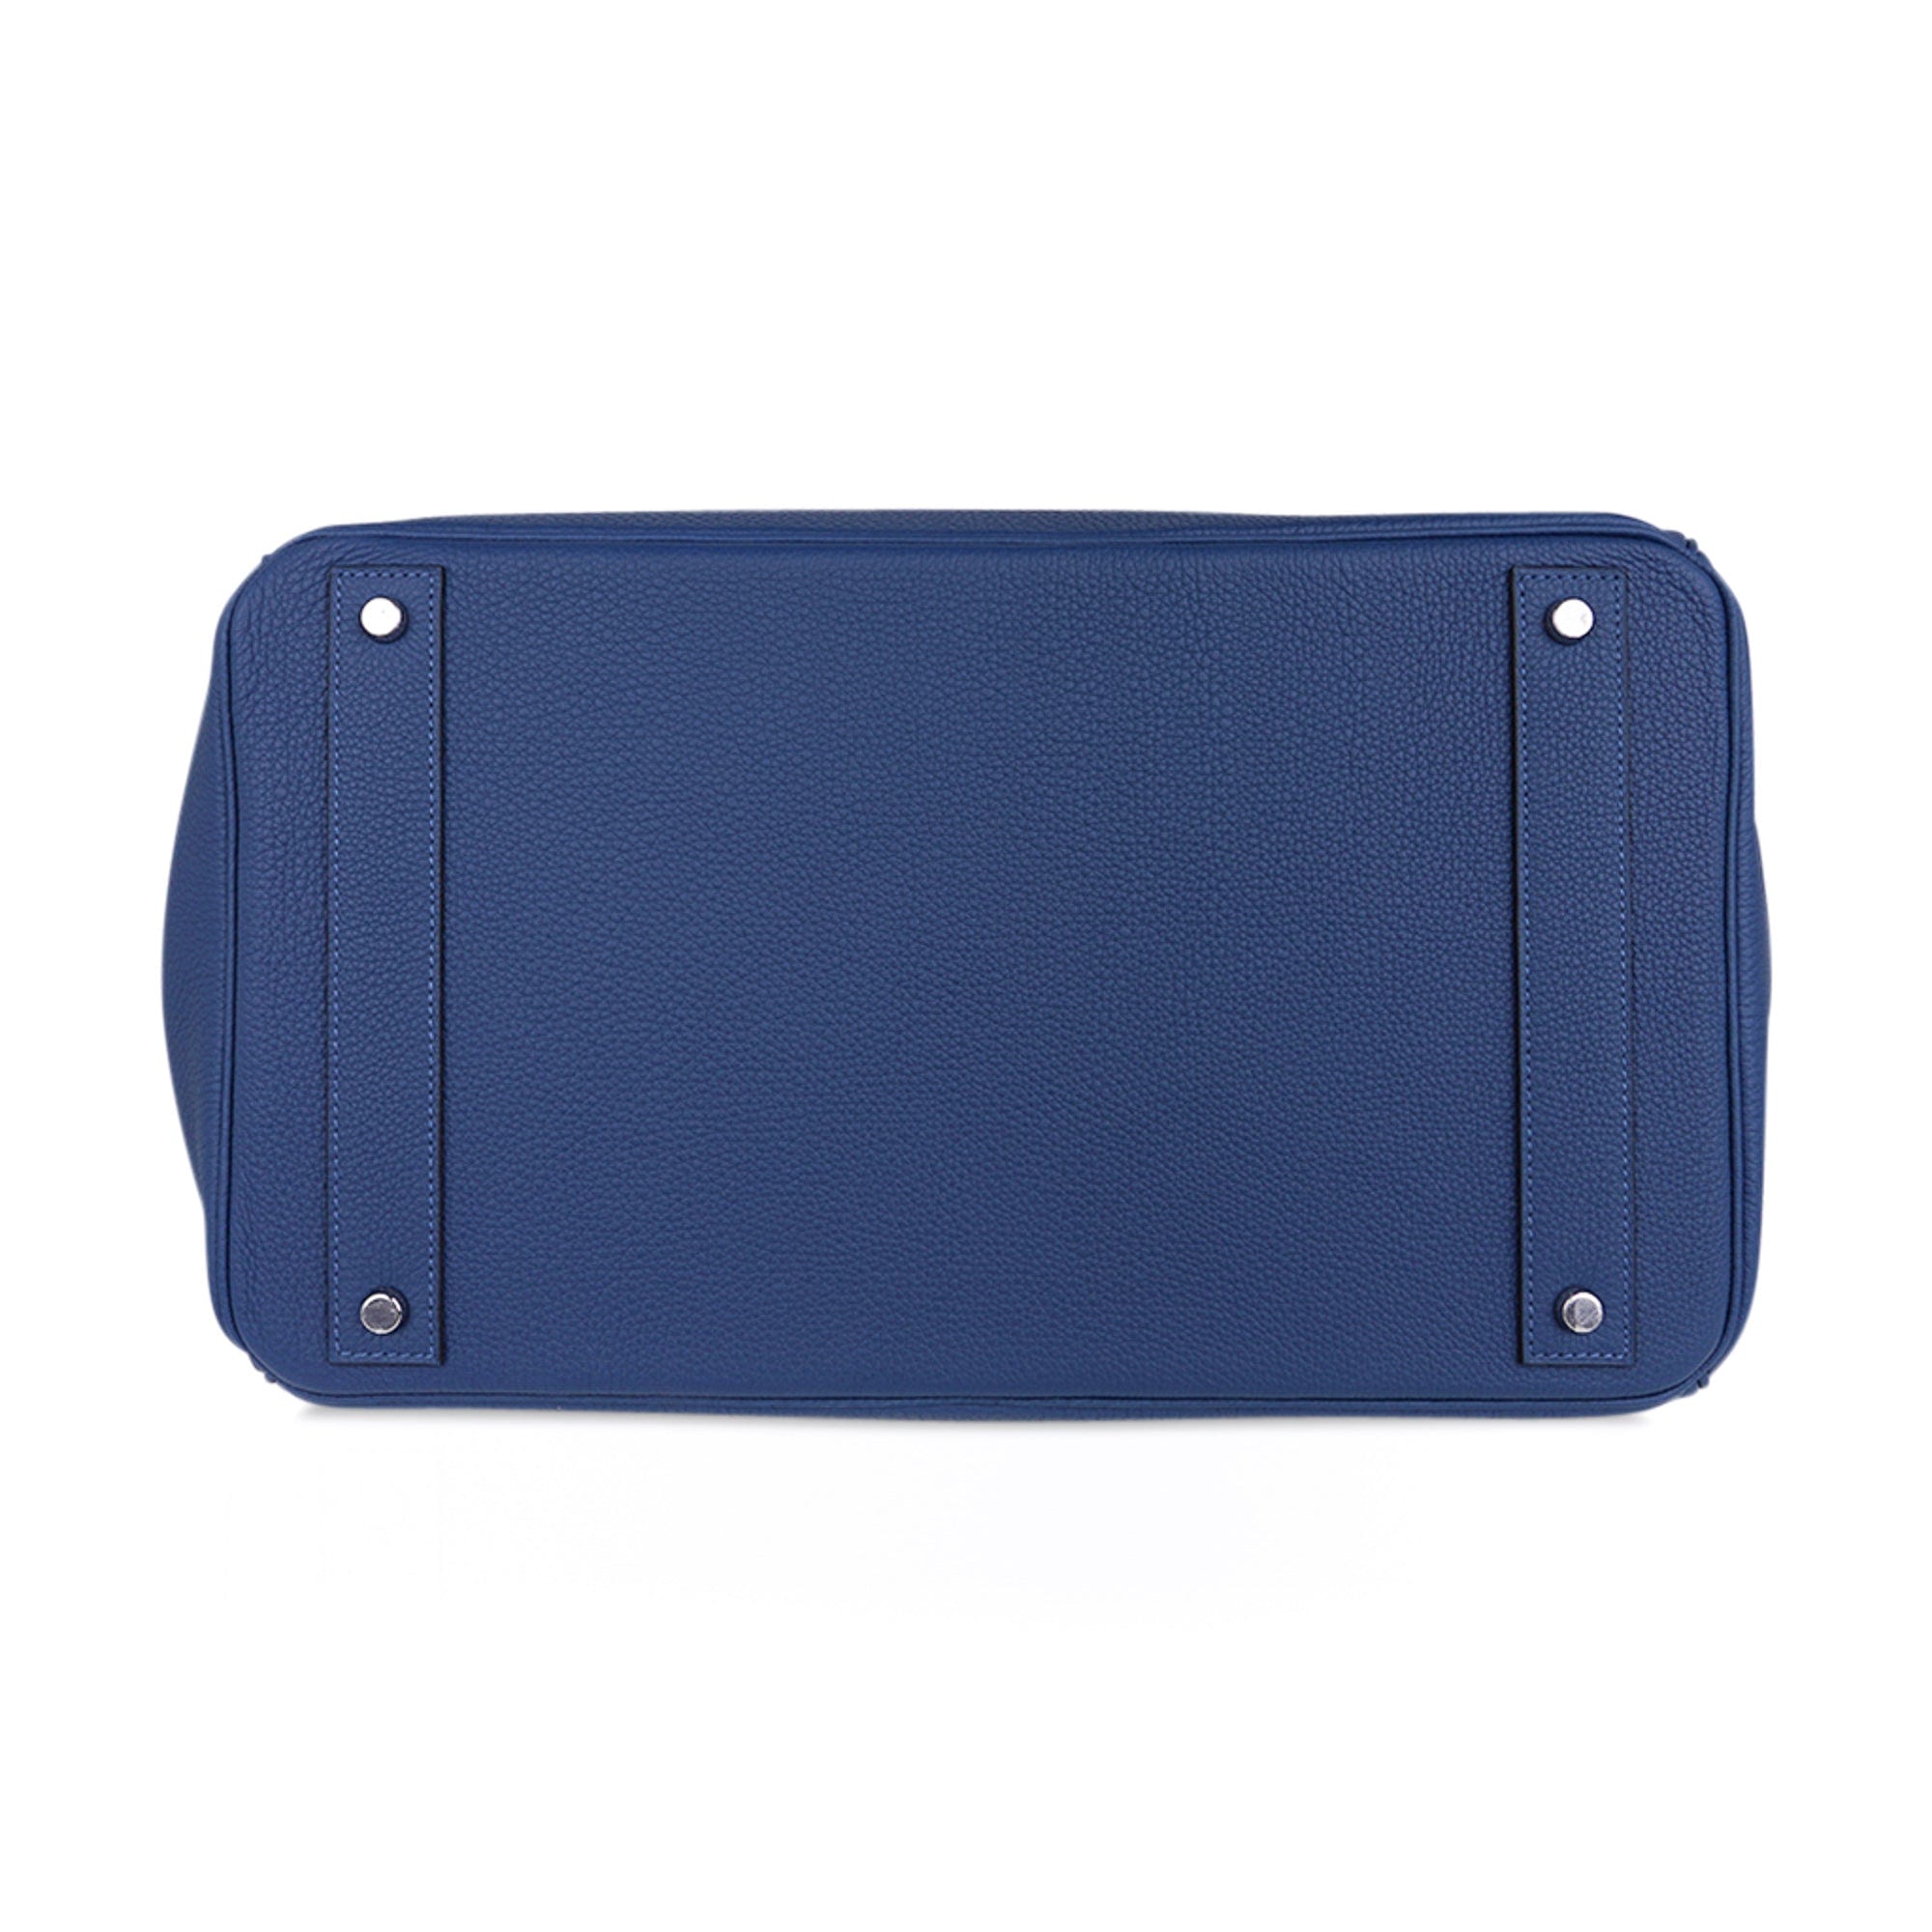 Hermes HAC Birkin Bag Blue Togo with Palladium Hardware 40 Blue 2197189